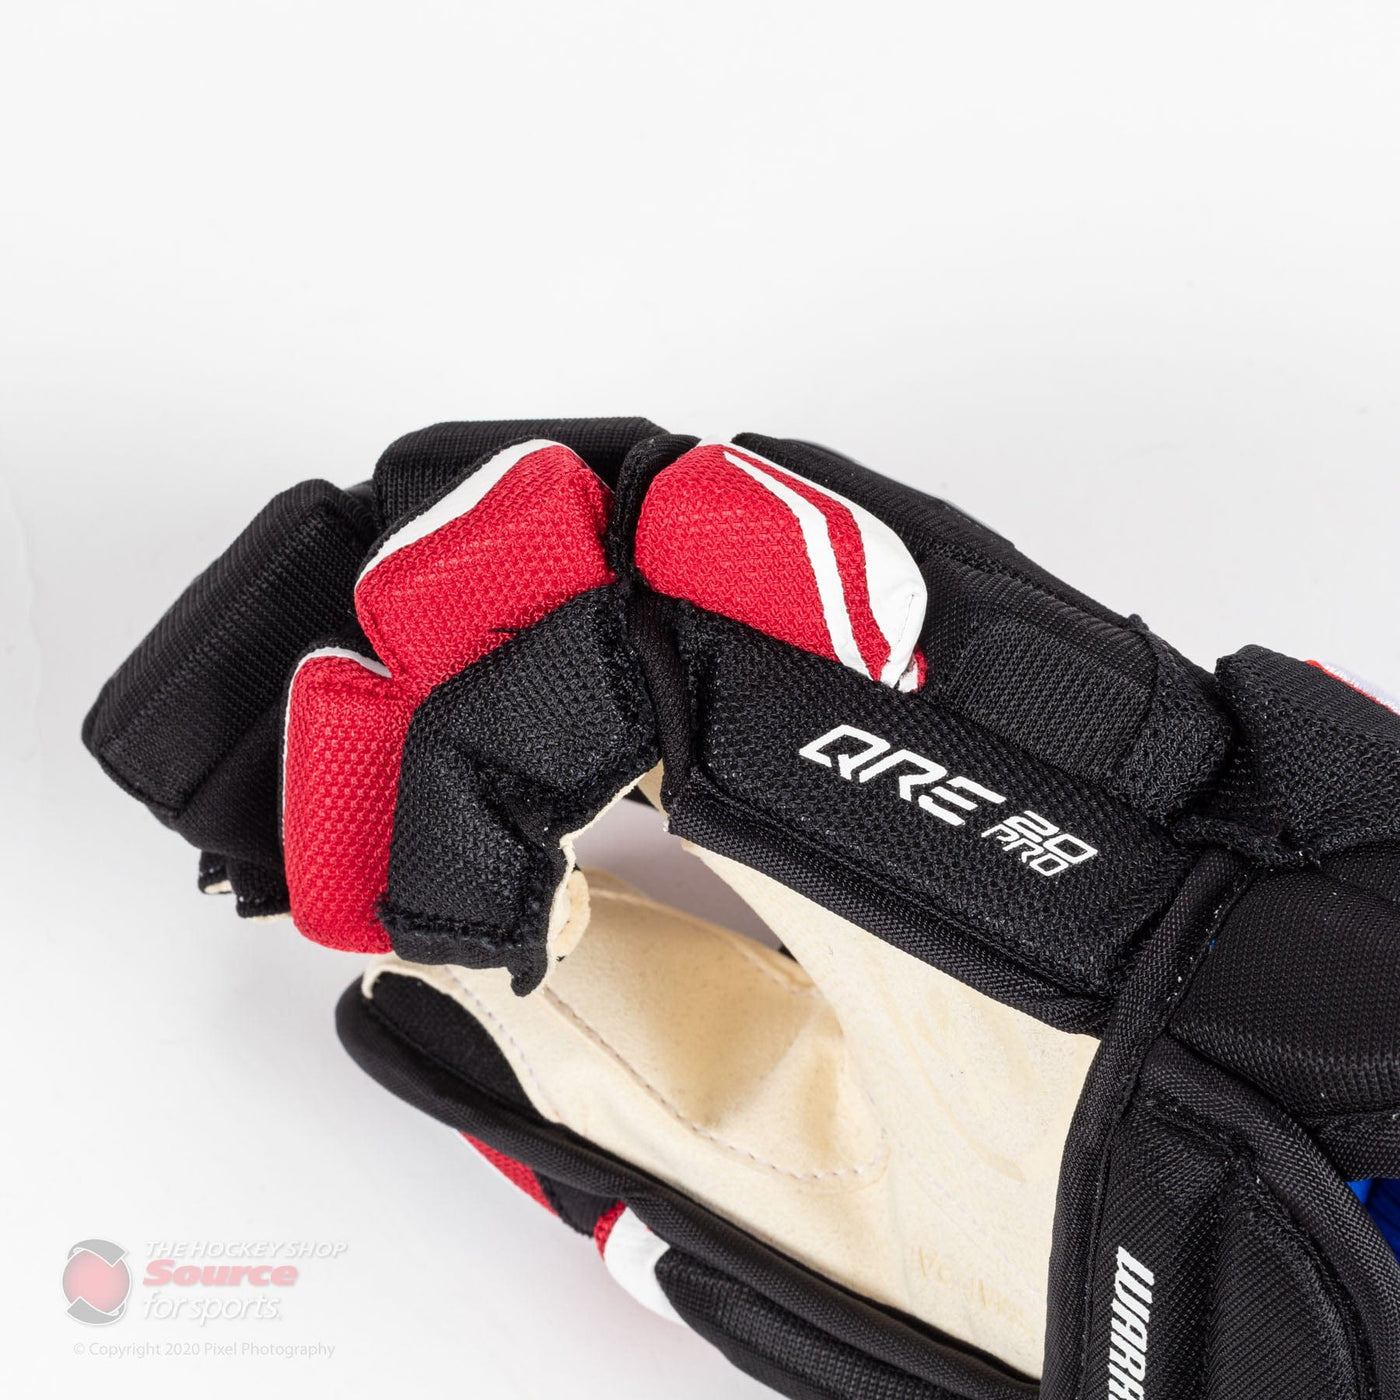 Warrior Covert QRE 20 Pro Junior Hockey Gloves